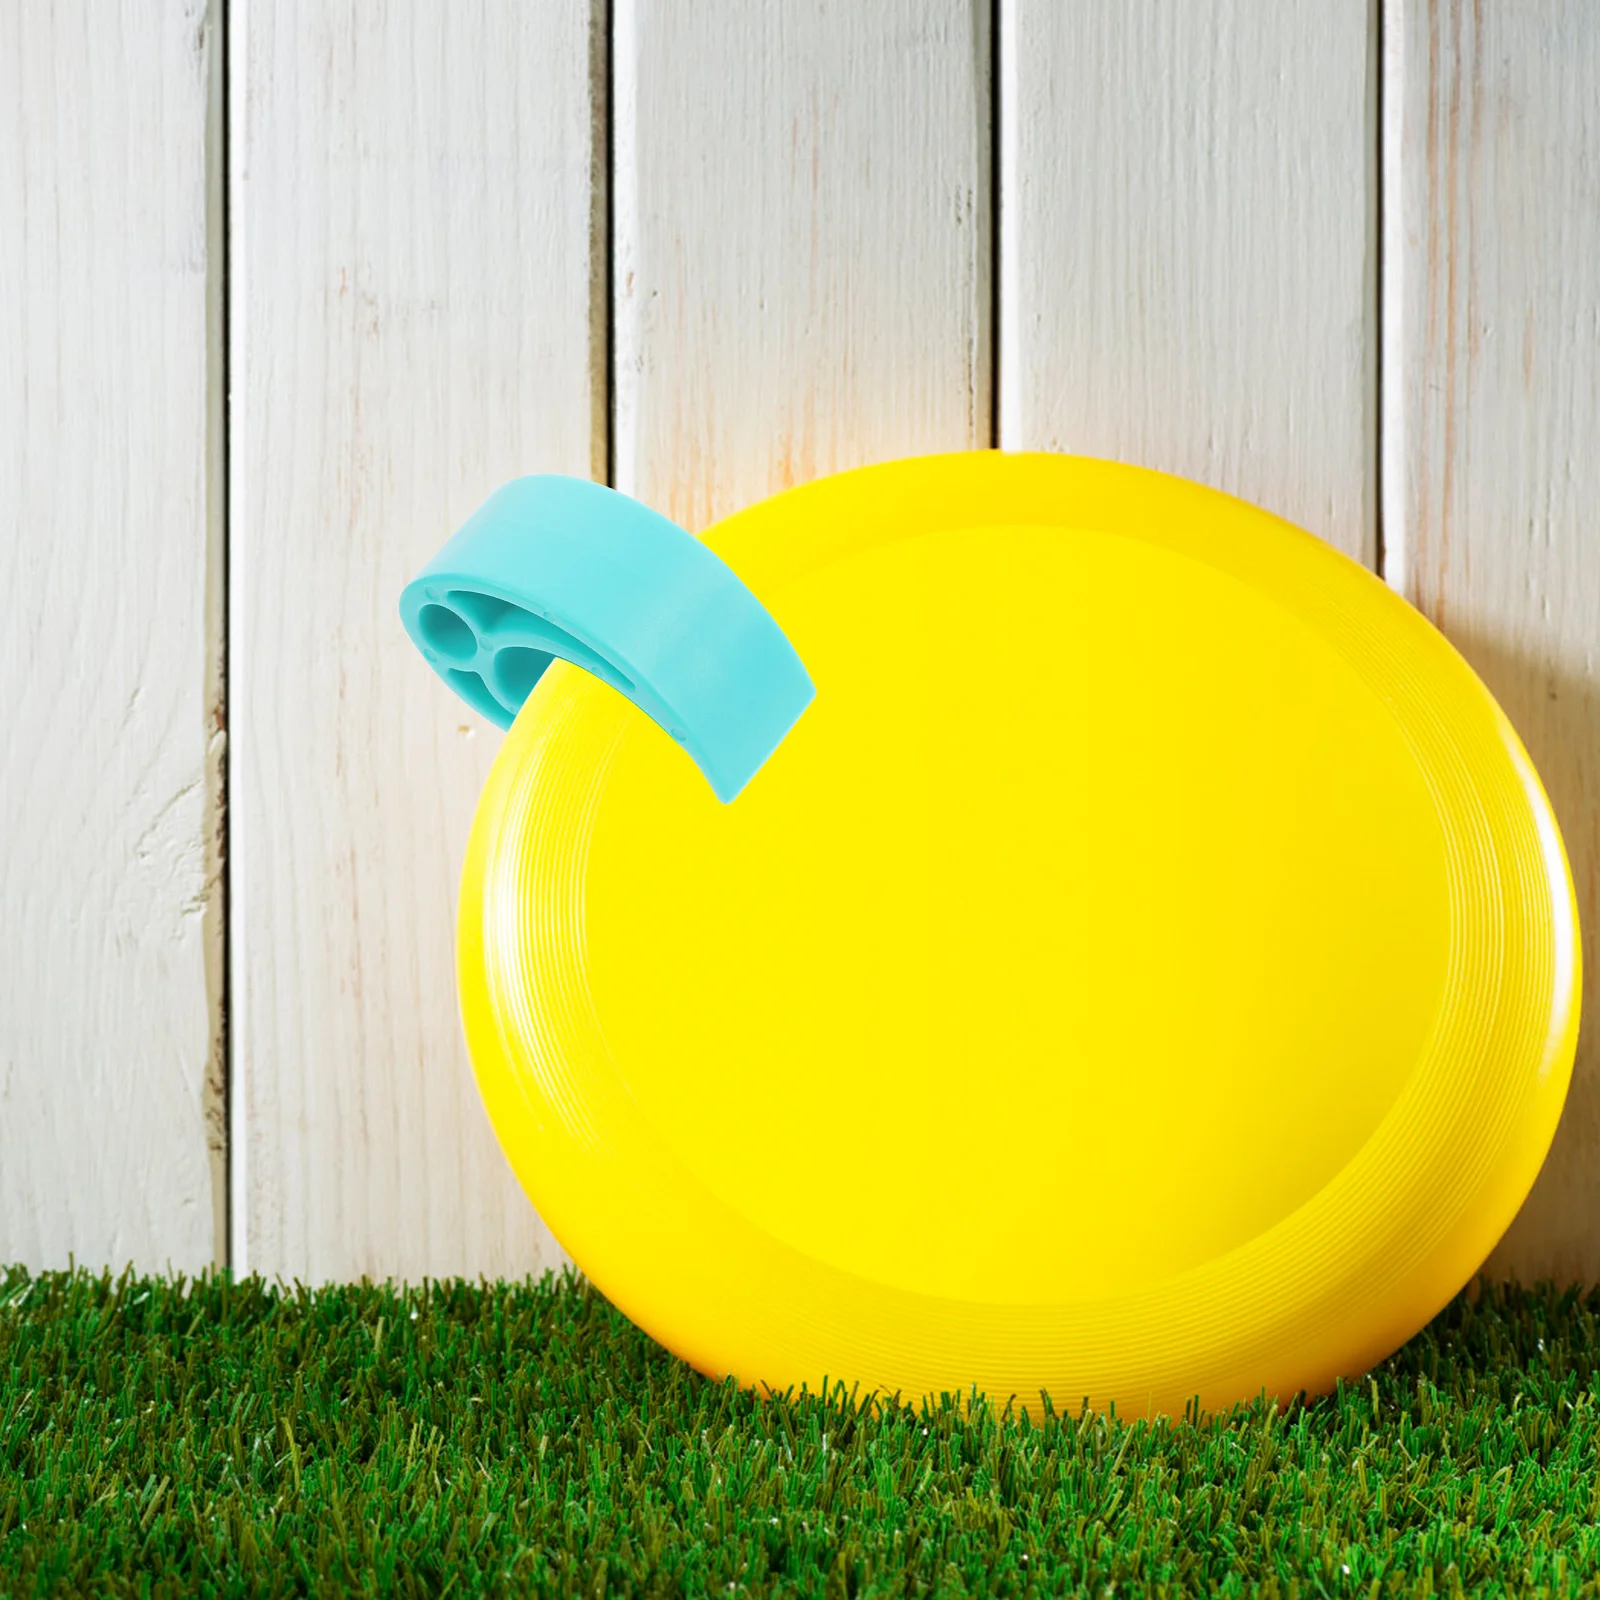 Spona ultimate frisbee klip přenosné soutěž outdoorové sportovní hračka příslušenství (green) hraček plastový létající disk